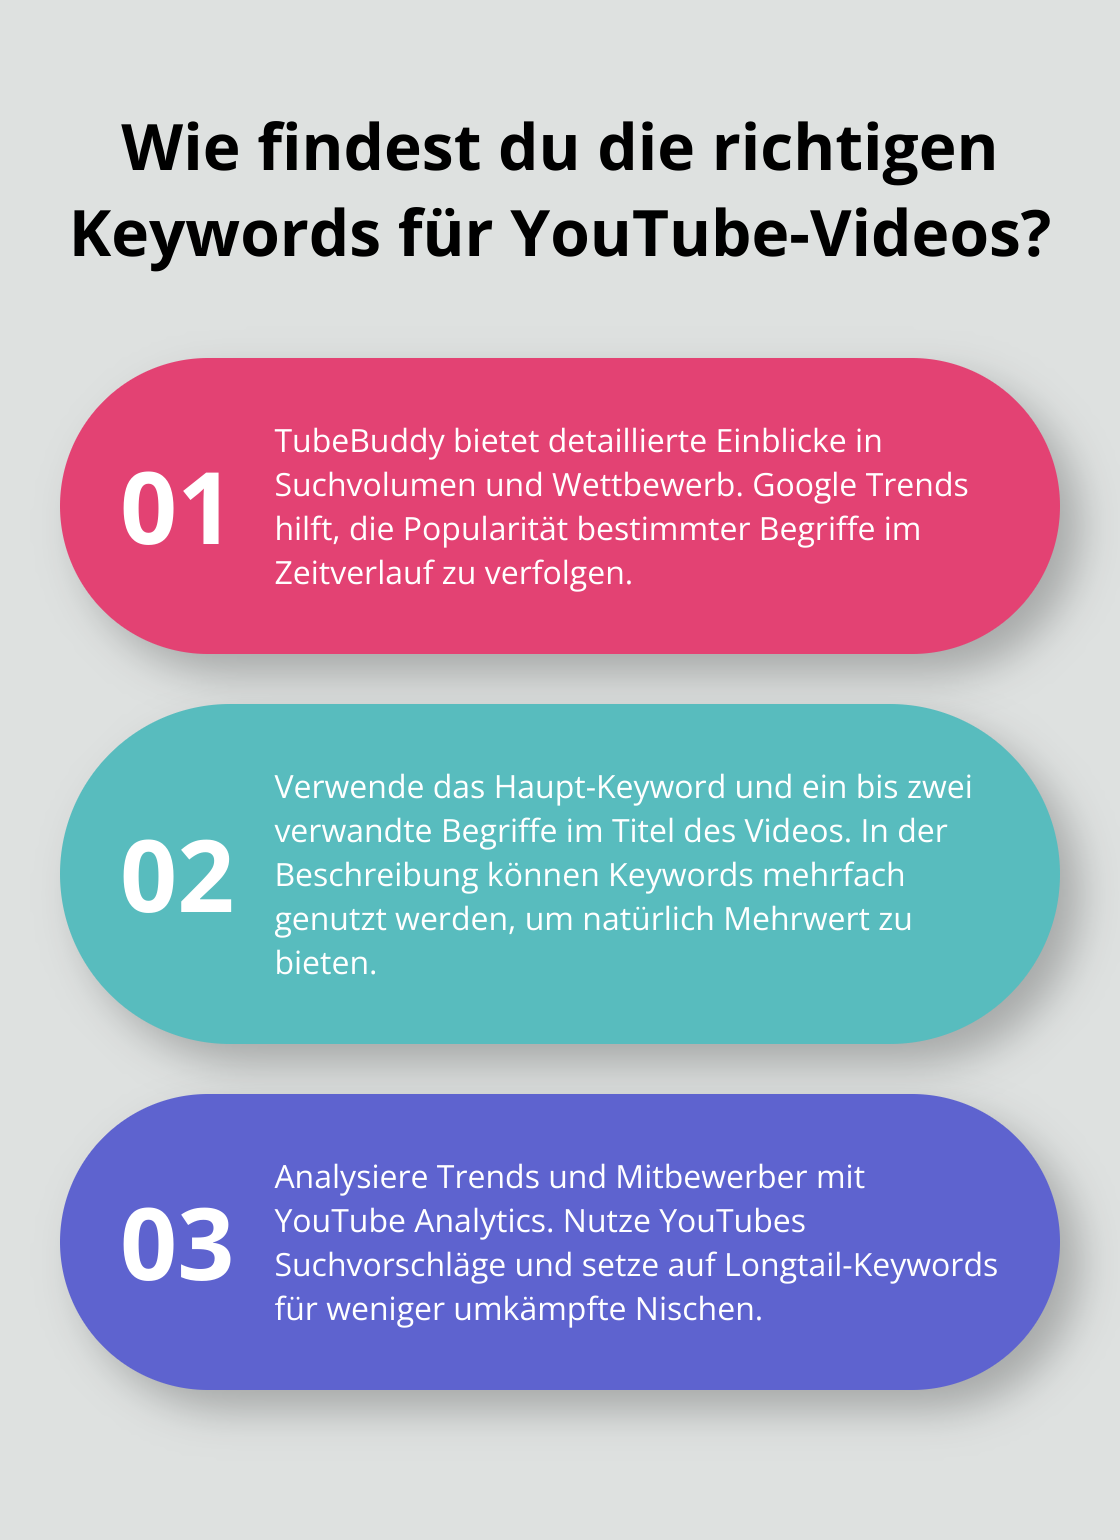 Fact - Wie findest du die richtigen Keywords für YouTube-Videos?